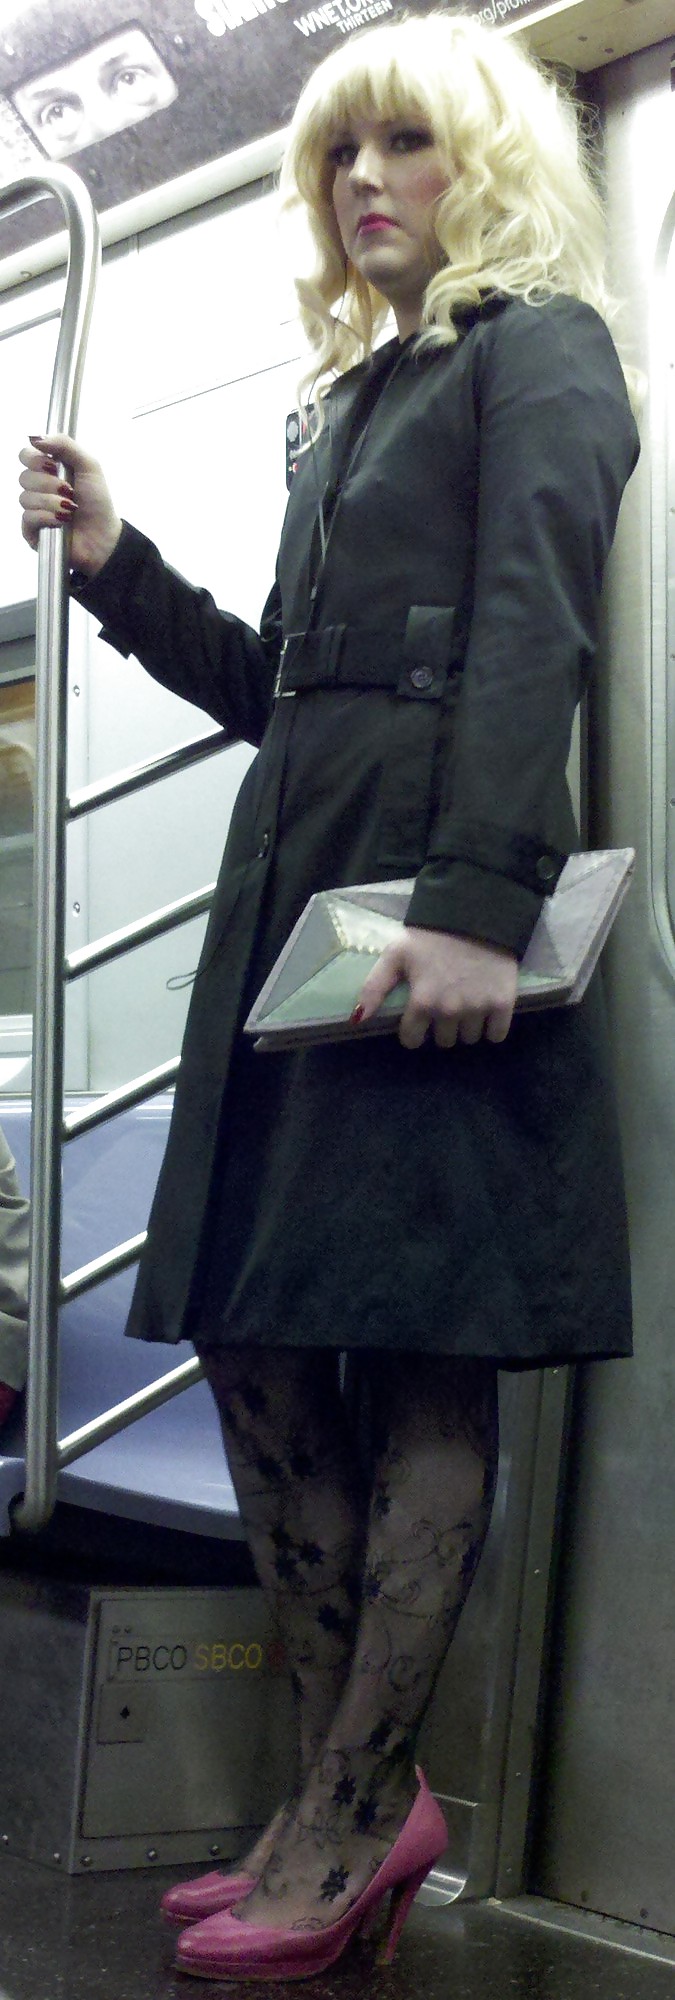 Ragazze della metropolitana di New York 107 il tipo sembra una signora
 #6603898